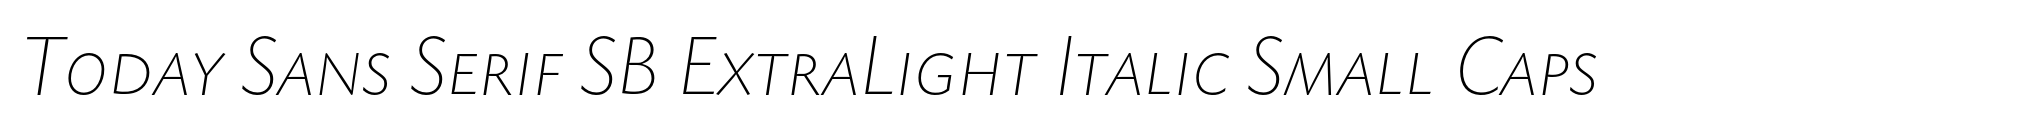 Today Sans Serif SB ExtraLight Italic Small Caps image